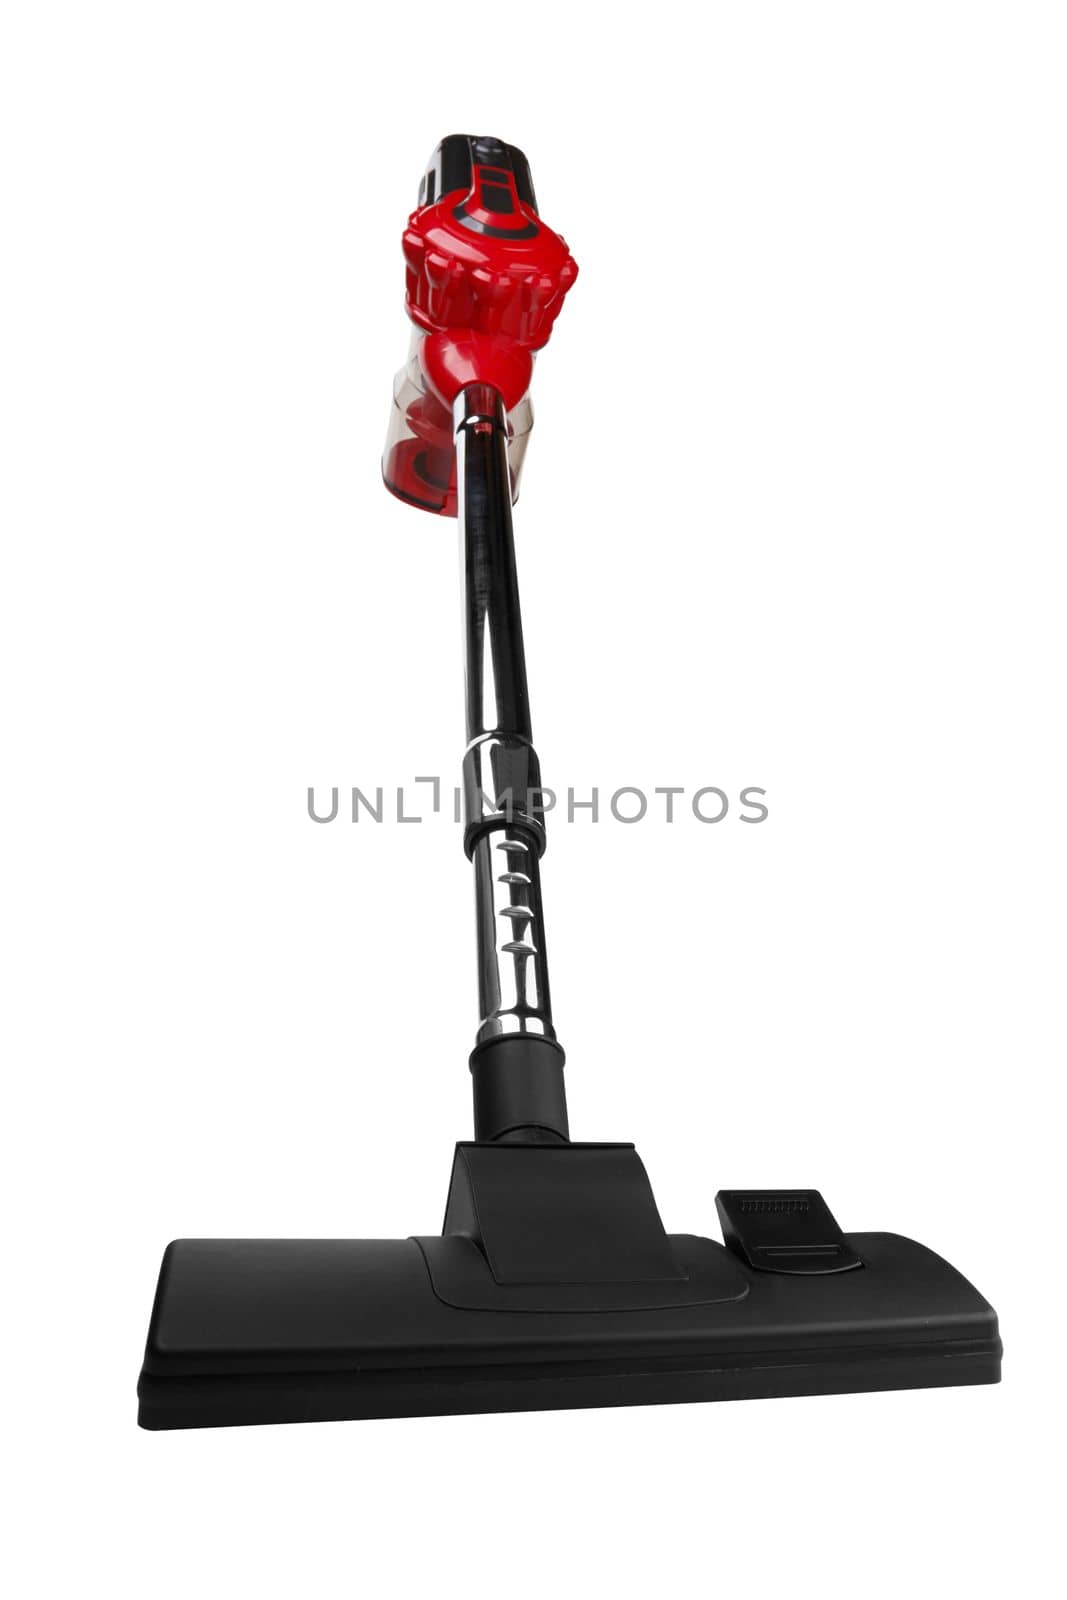 Handheld vacuum cleaner by pioneer111